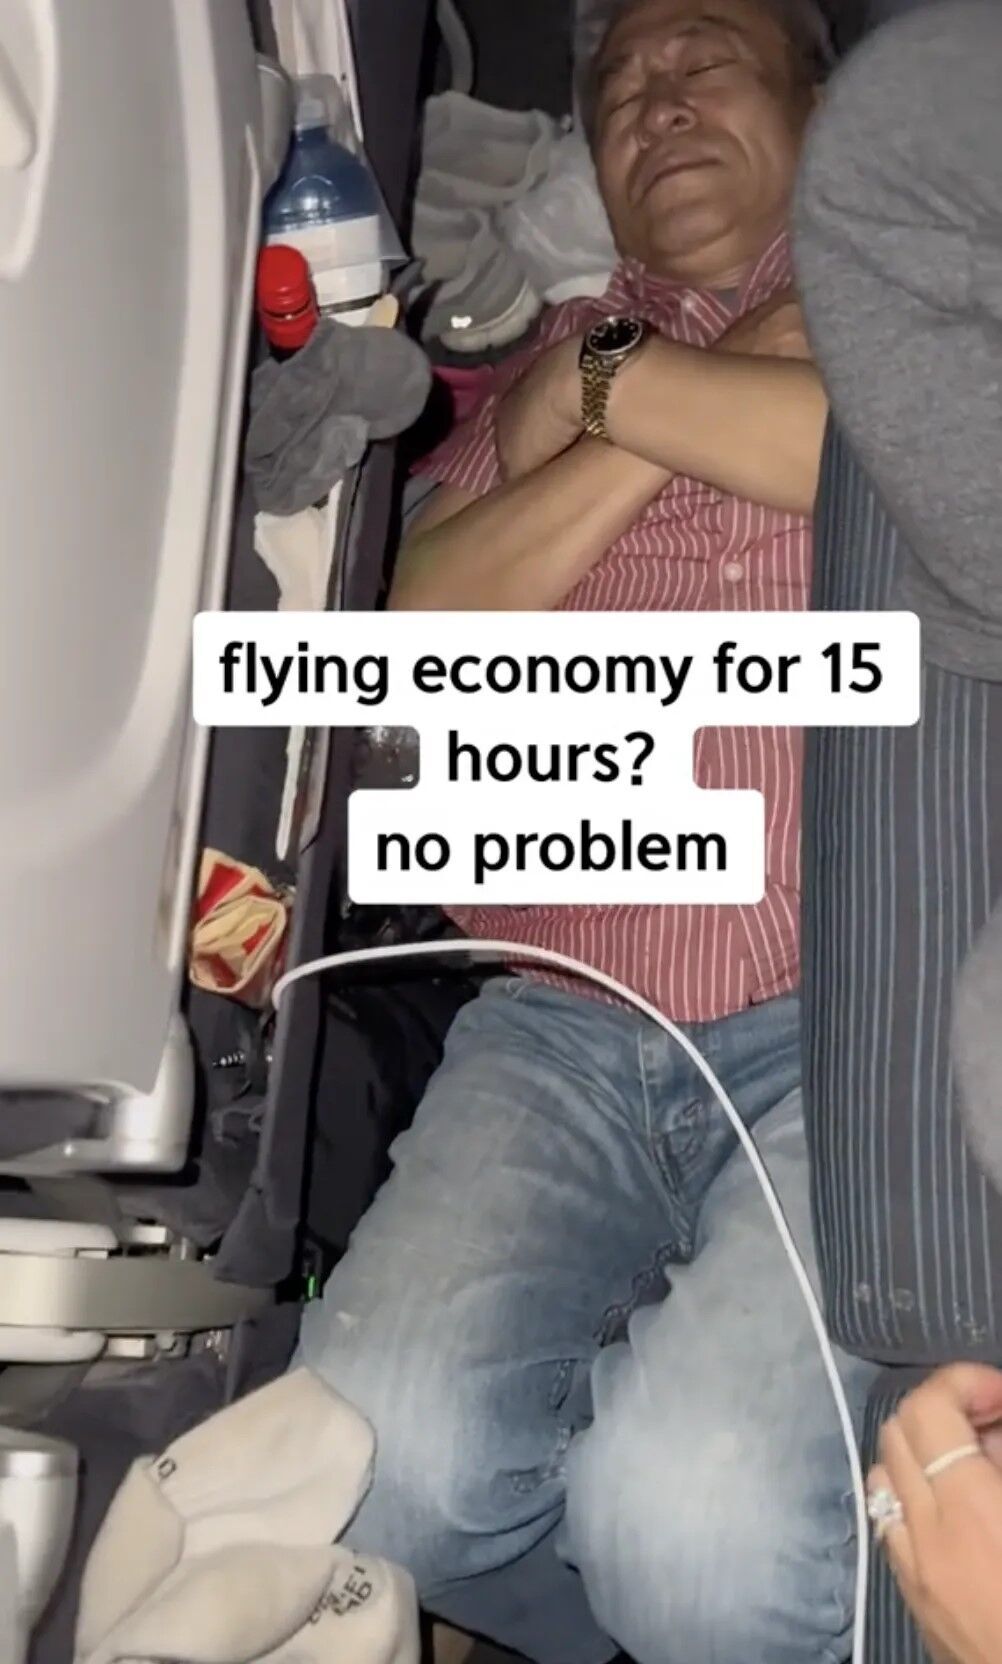 Сообразительный пассажир придумал, как можно раздаться и выспаться в эконом-классе. Лайфхак стал вирусным